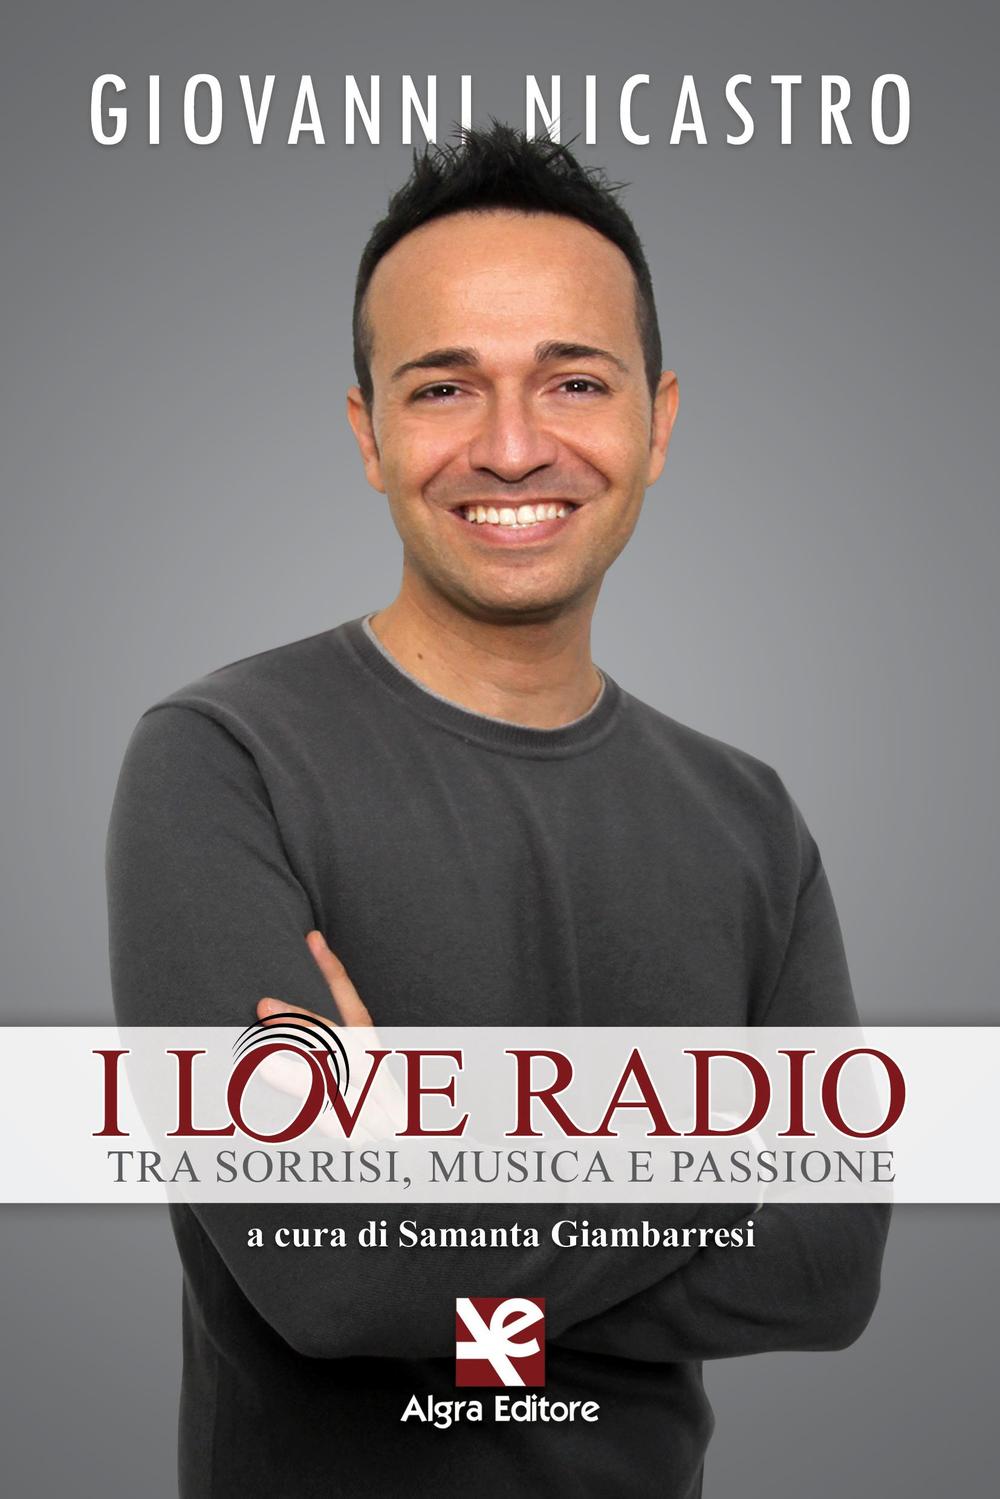 I love radio. Tra sorrisi, musica e passione